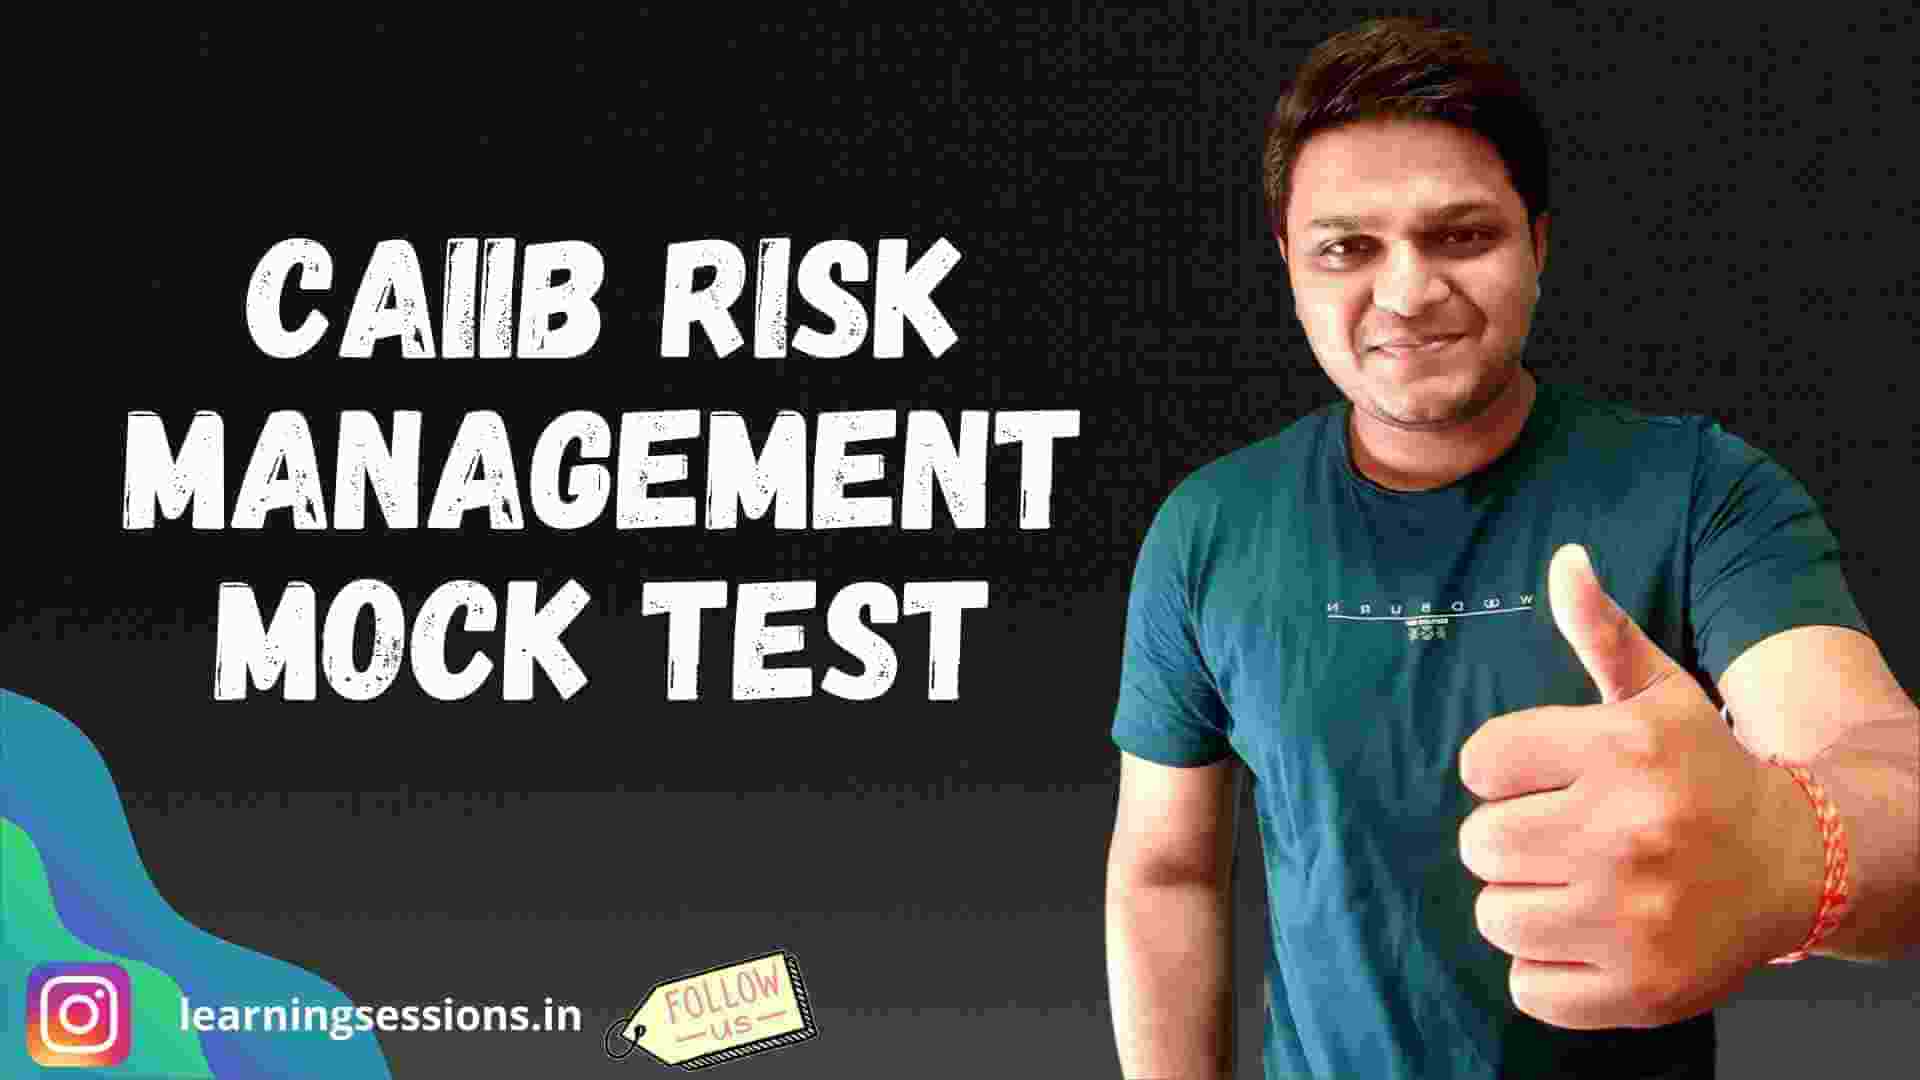 CAIIB - RISK MANAGEMENT MOCK TEST